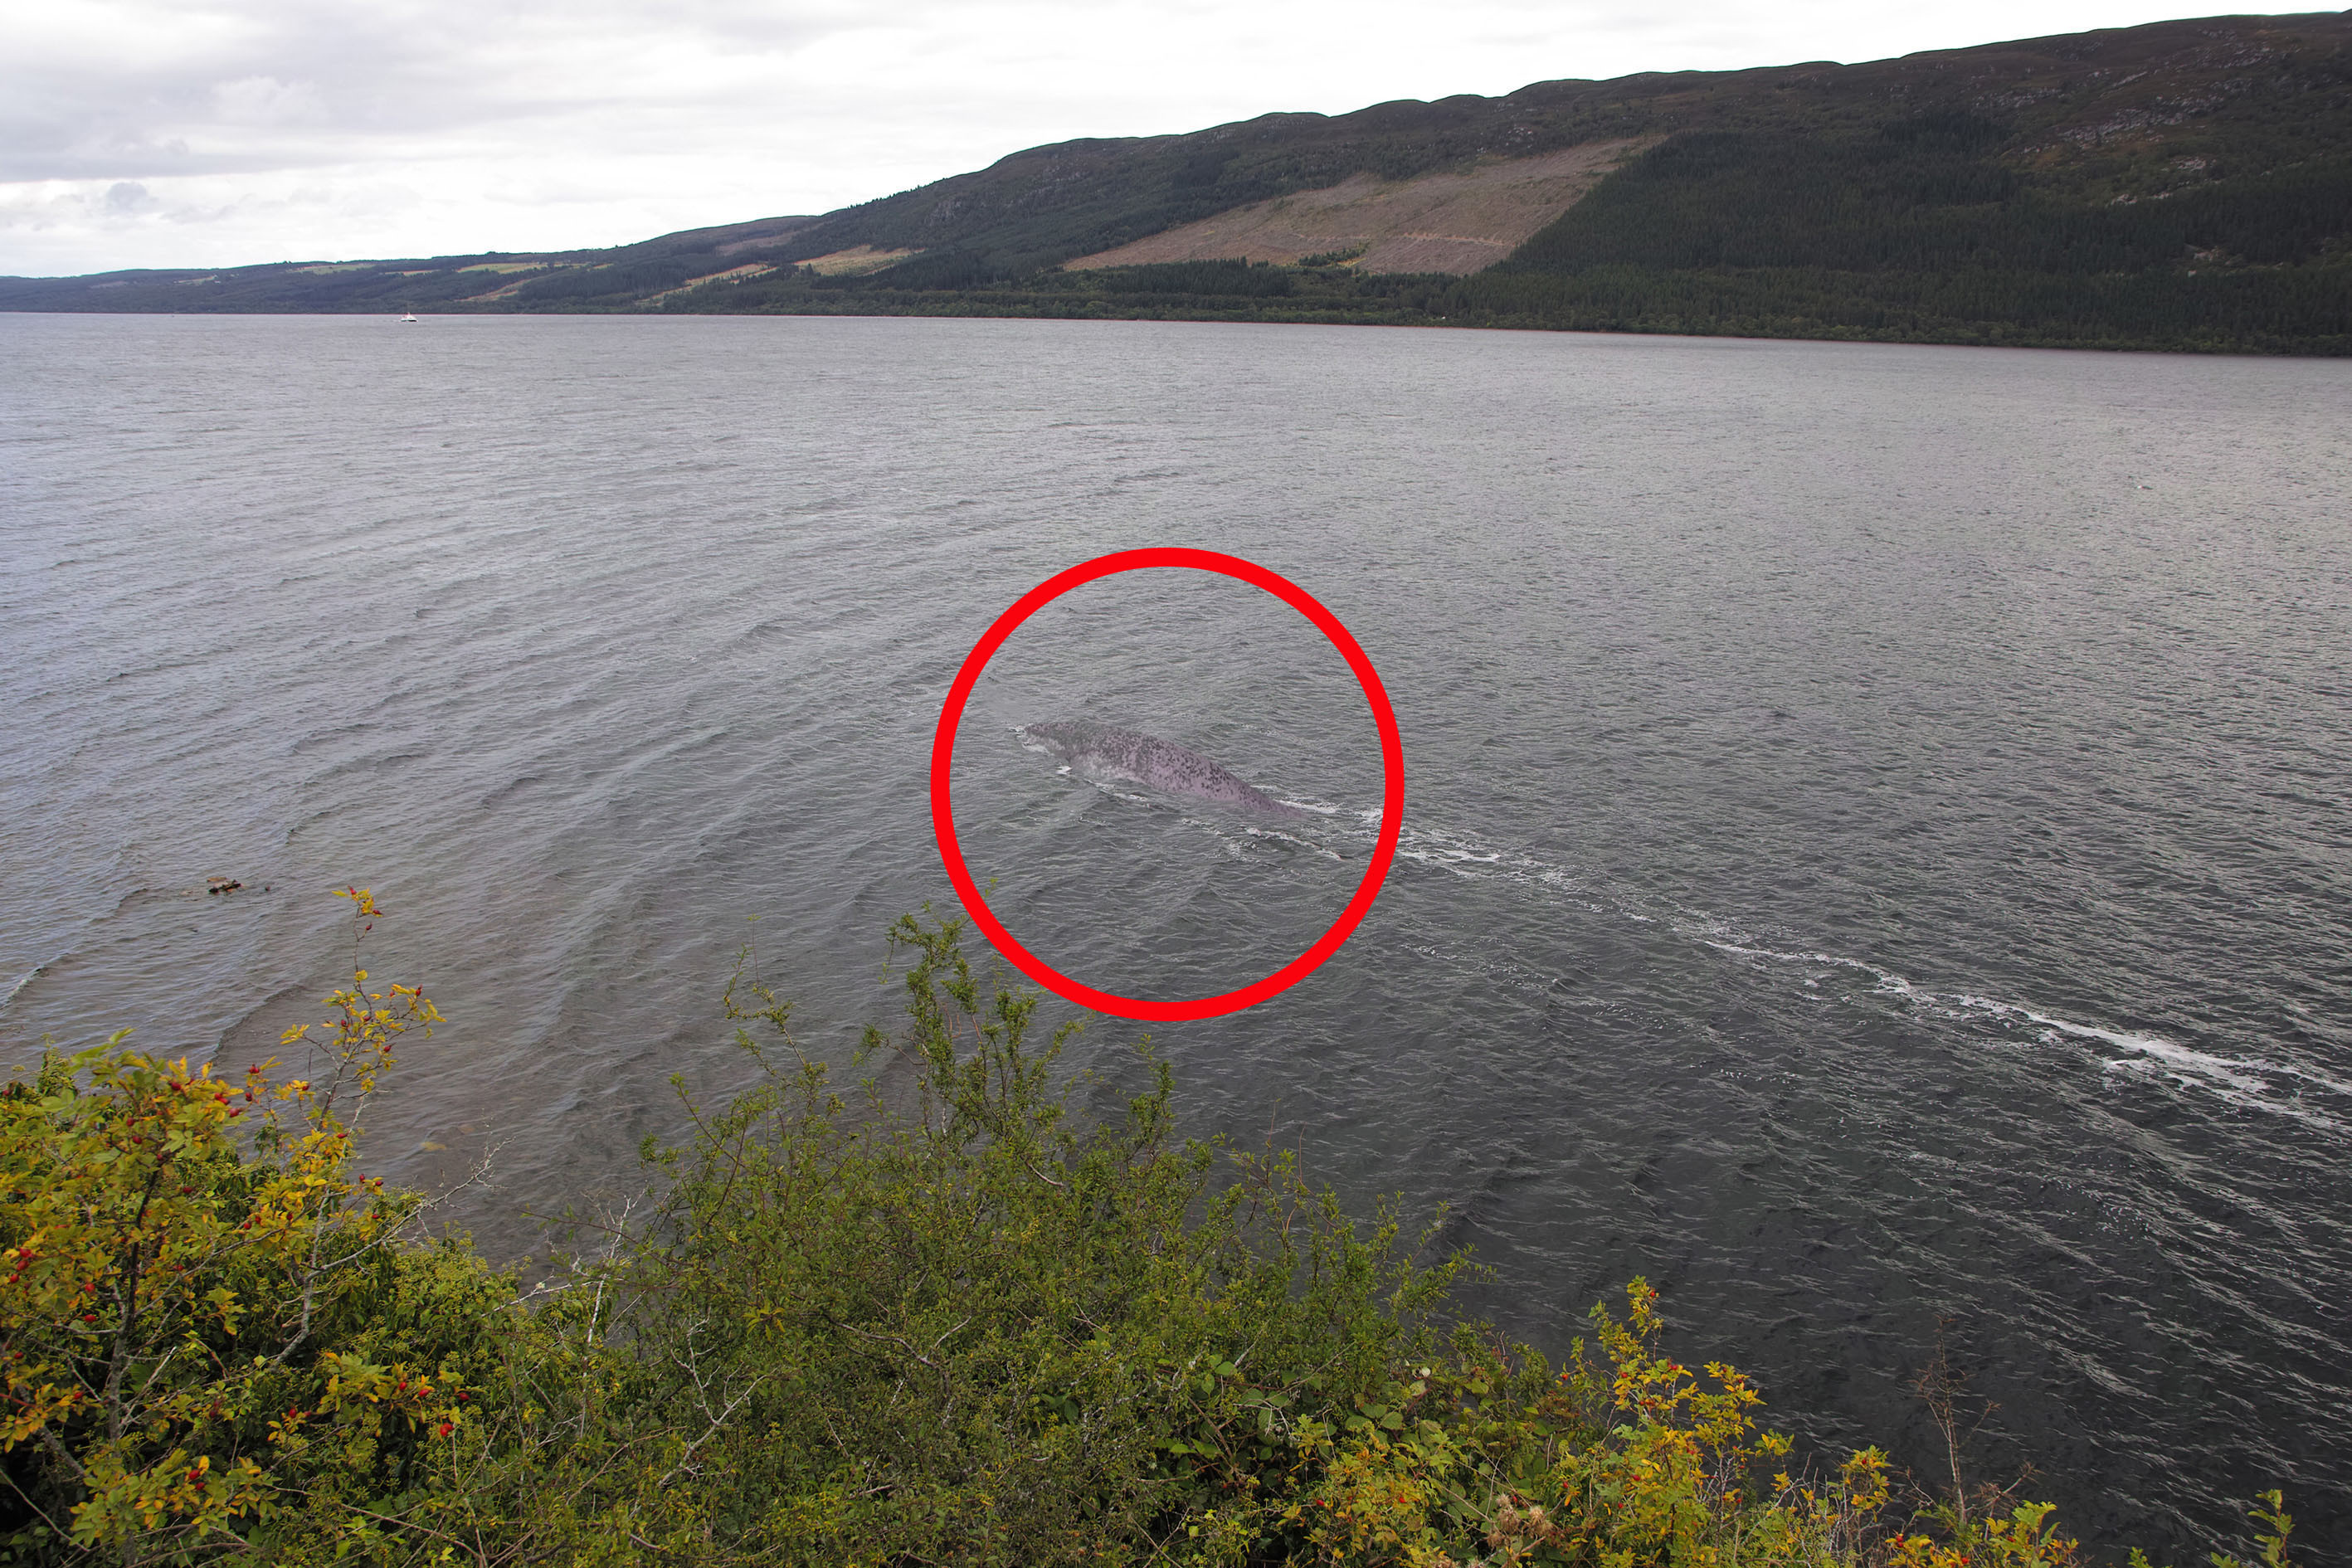 英国游客拍到史上最清晰"尼斯湖水怪"照片,网友:那是大鲶鱼